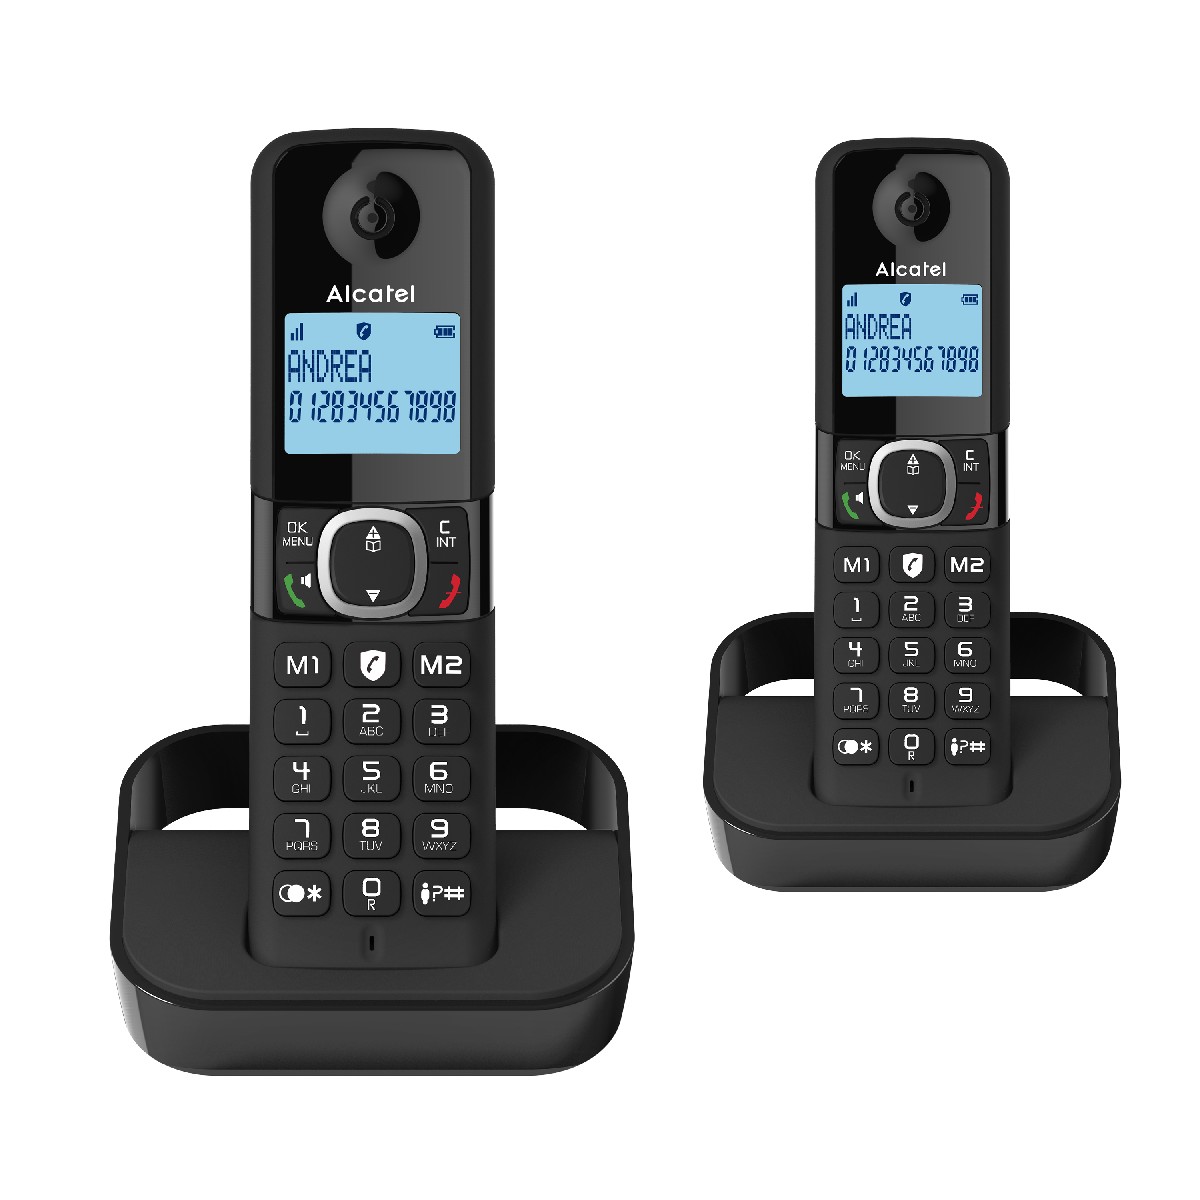 Ασύρματο Ψηφιακό Τηλέφωνο Alcatel F860 DUO  με Ανοιχτή Ακρόαση και Δυνατότητα Αποκλεισμού Κλήσεων  Μαύρο